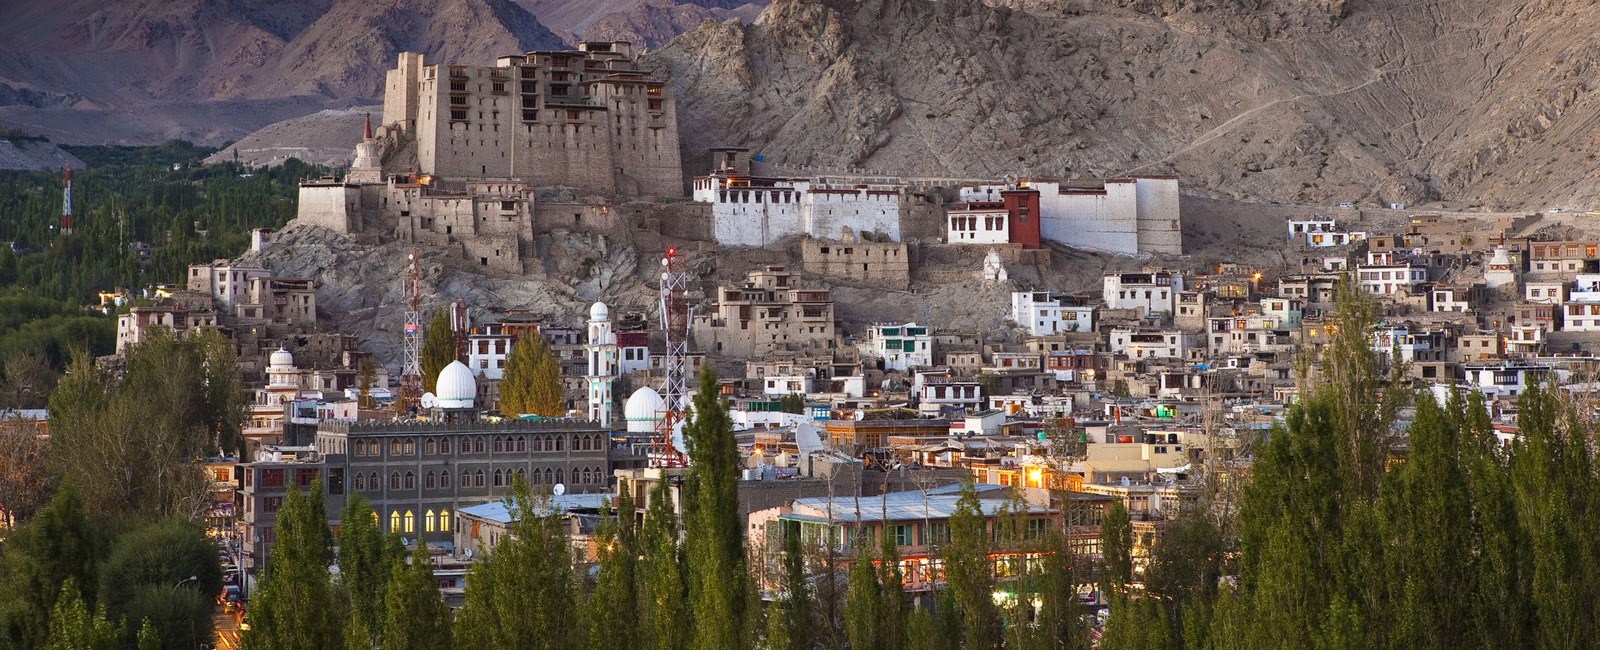 Thiksay Monastery - Leh Ladakh